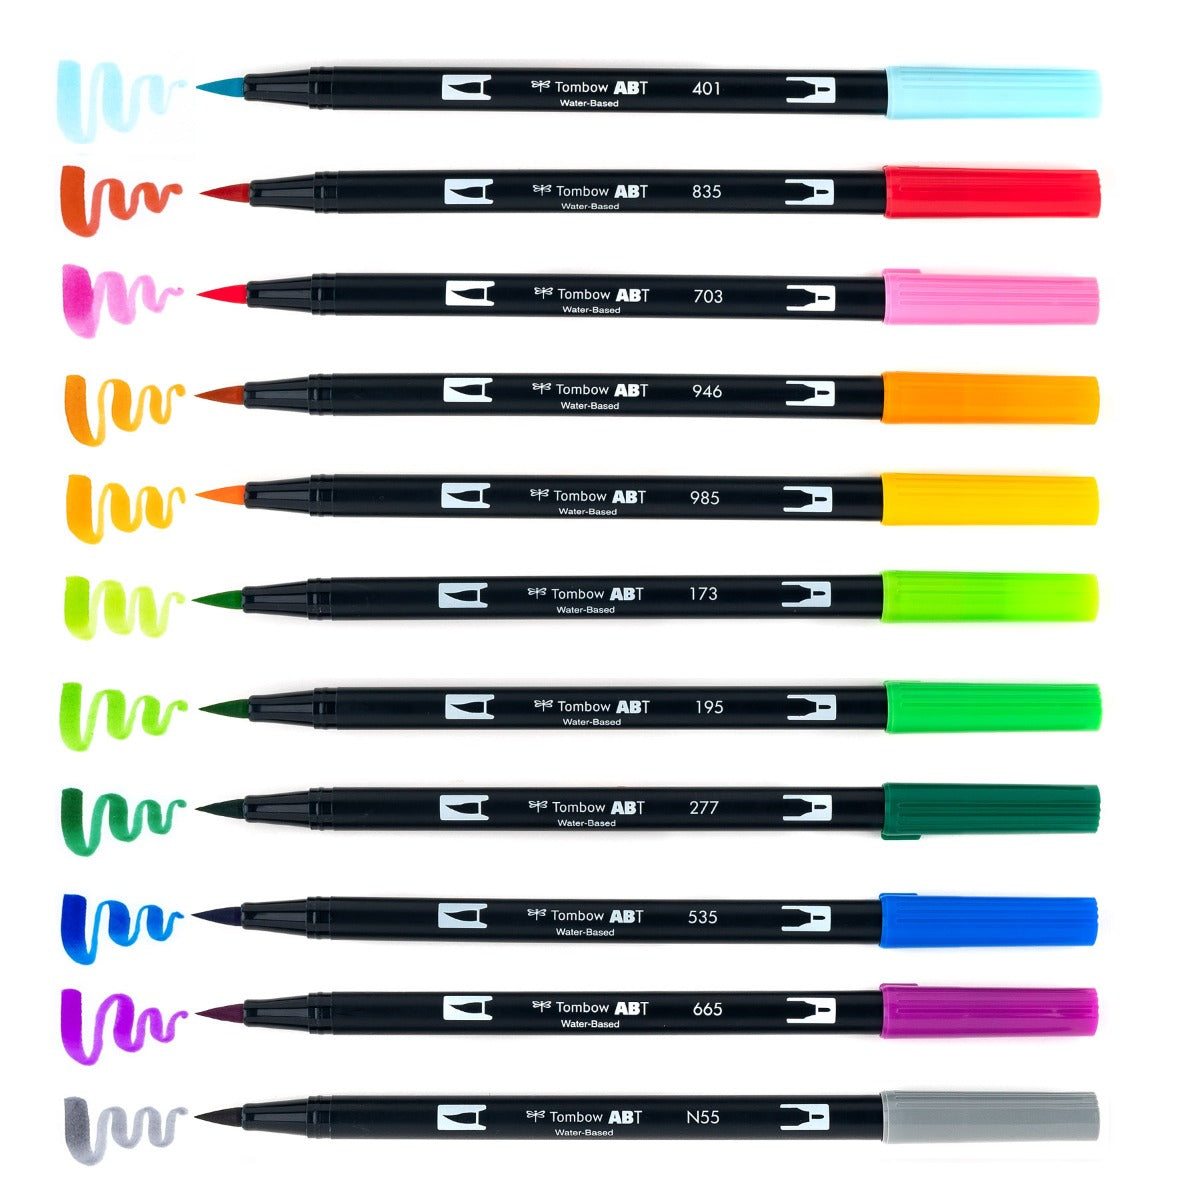 Dual Brush Pen Art Markers, Watercolor Favorites, 10-Pack + Free Dual Brush Pen